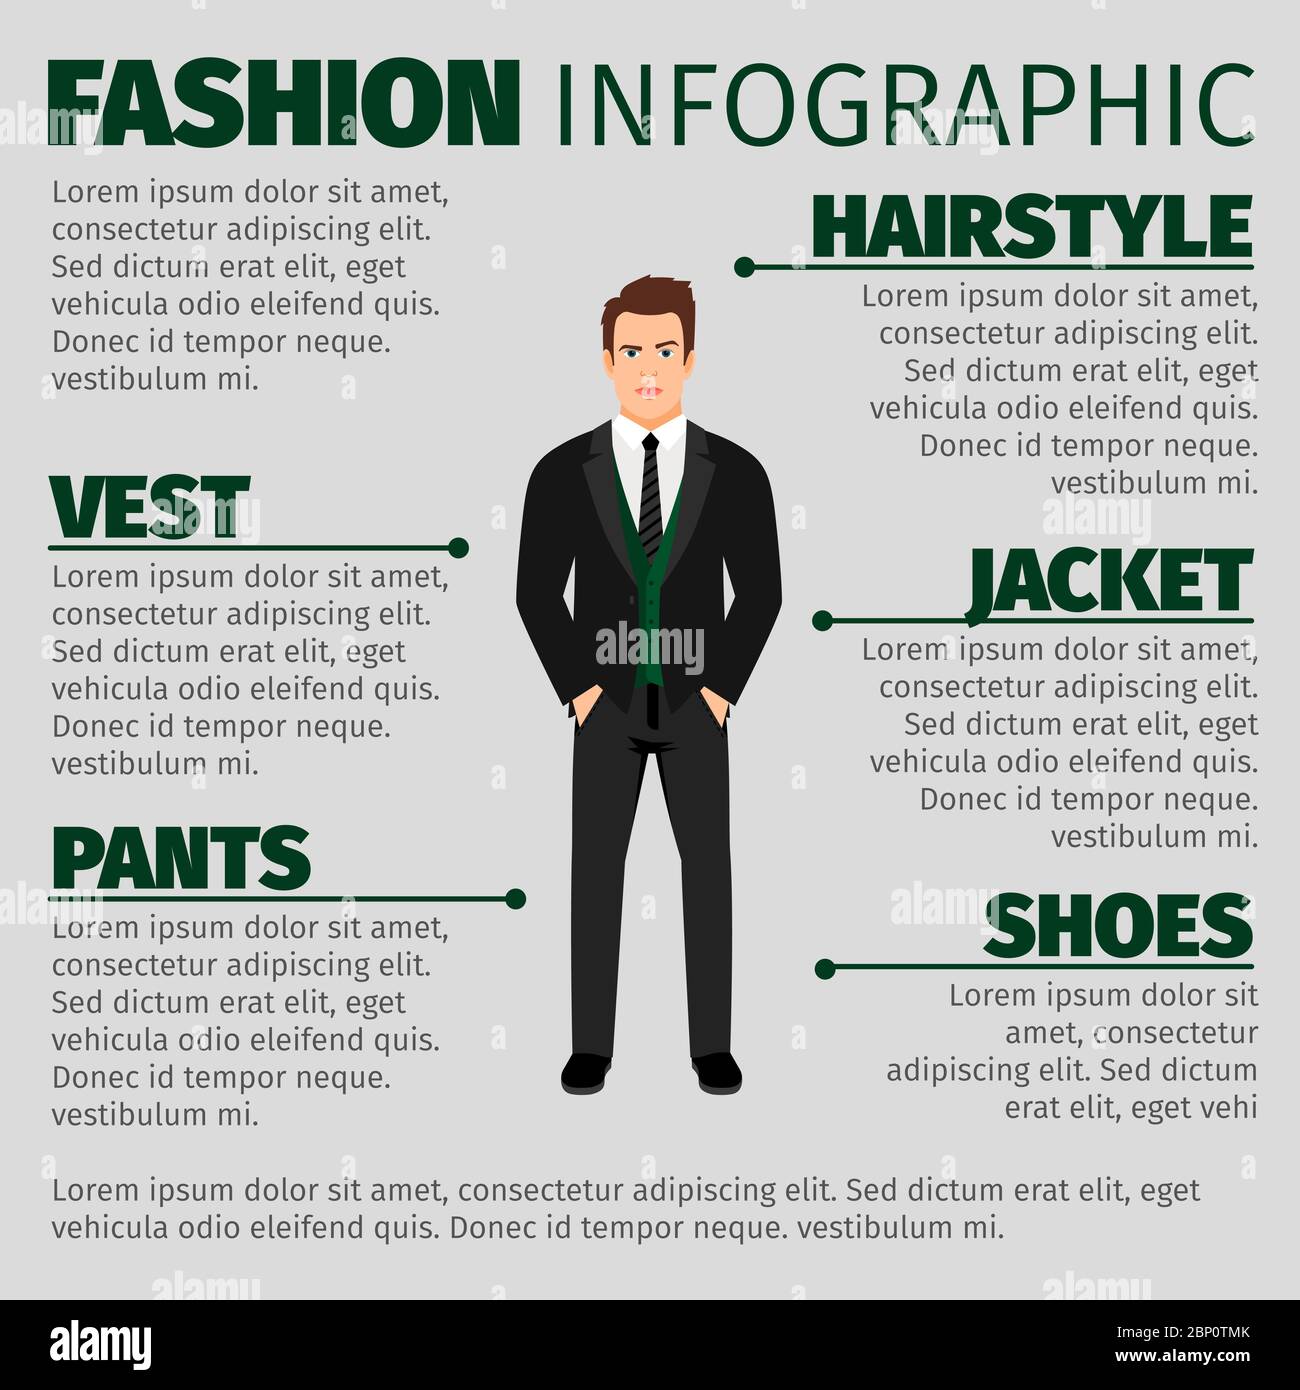 Infographie de mode avec homme en costume et veste verte. Illustration vectorielle Illustration de Vecteur